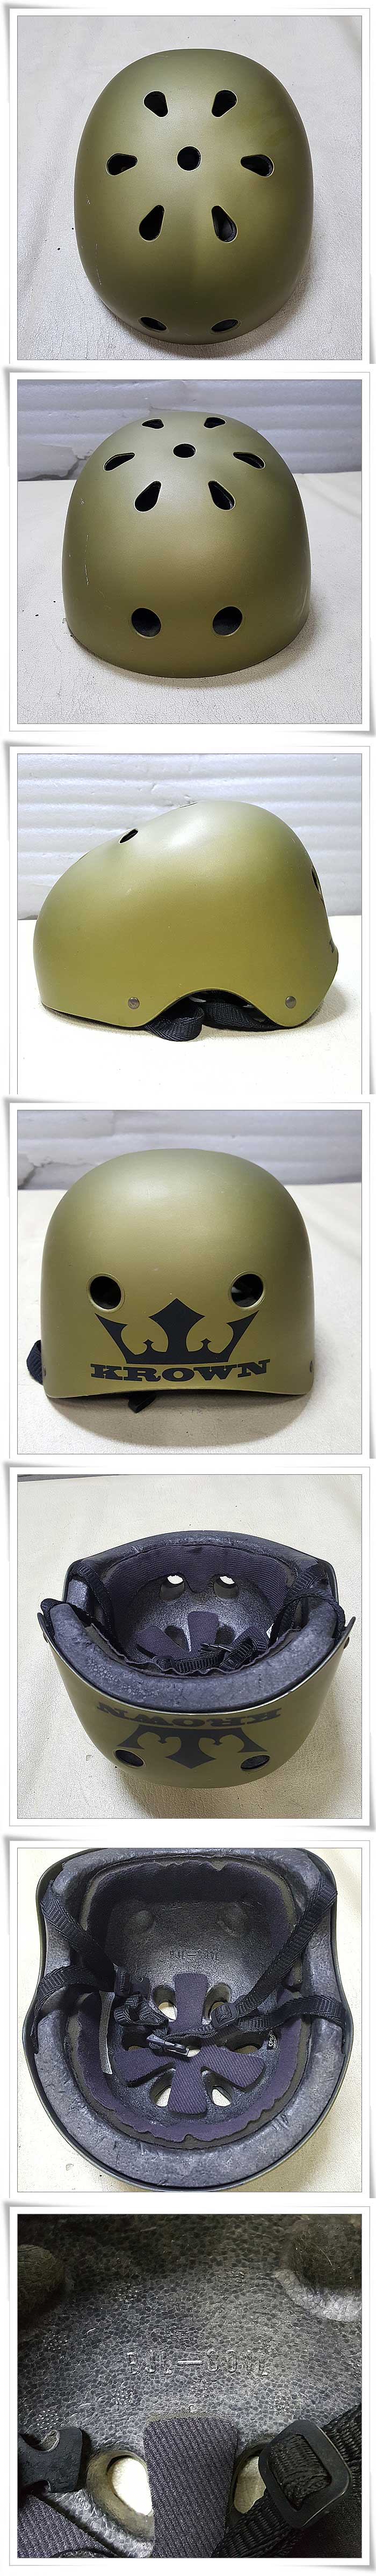 KROWN-헬멧.jpg